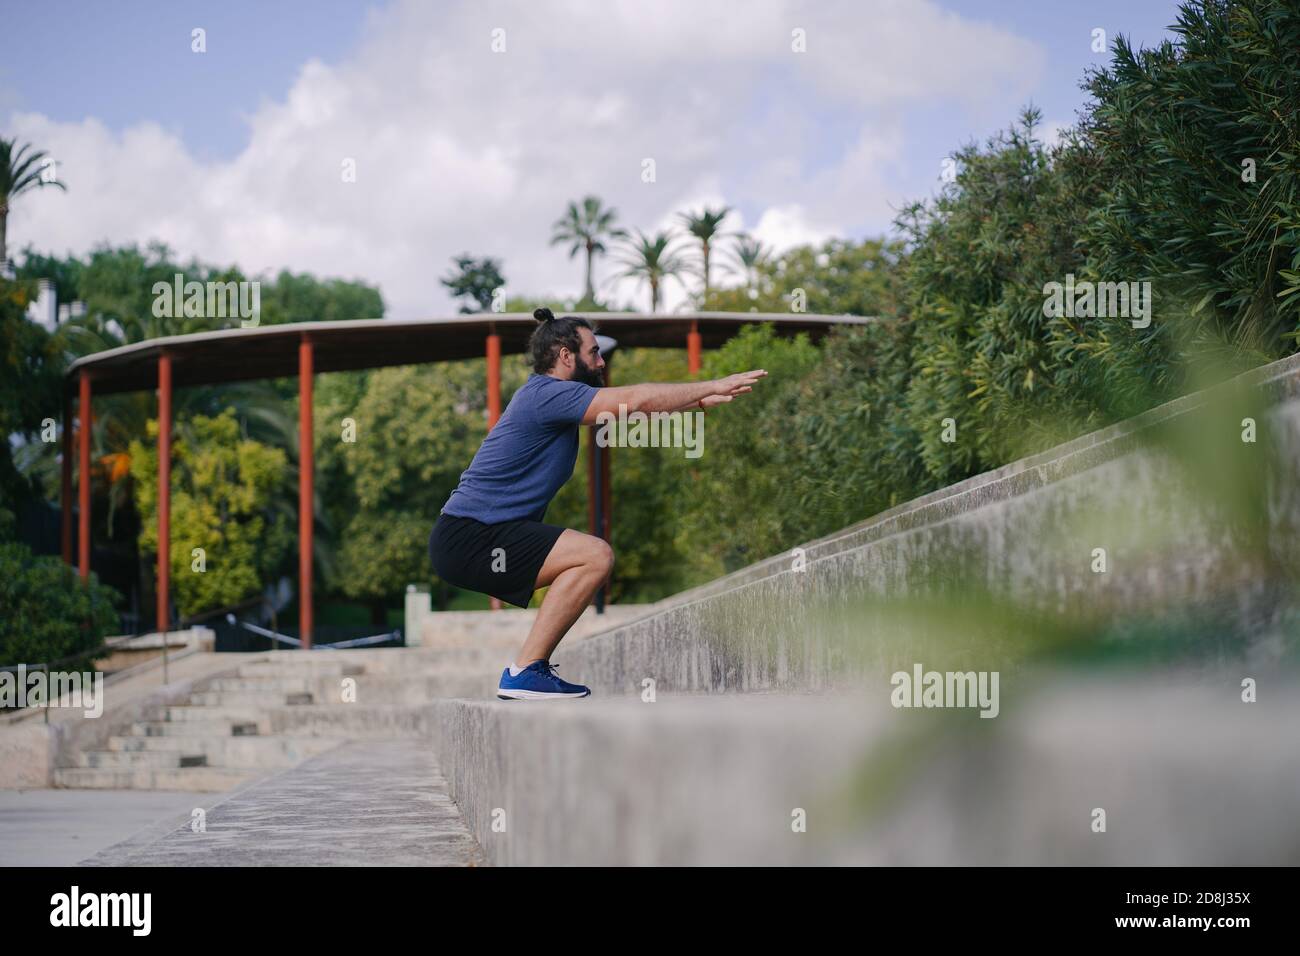 Mann trainiert mit hockigen Sprüngen auf den Stufen eines Fußballplatz Stockfoto